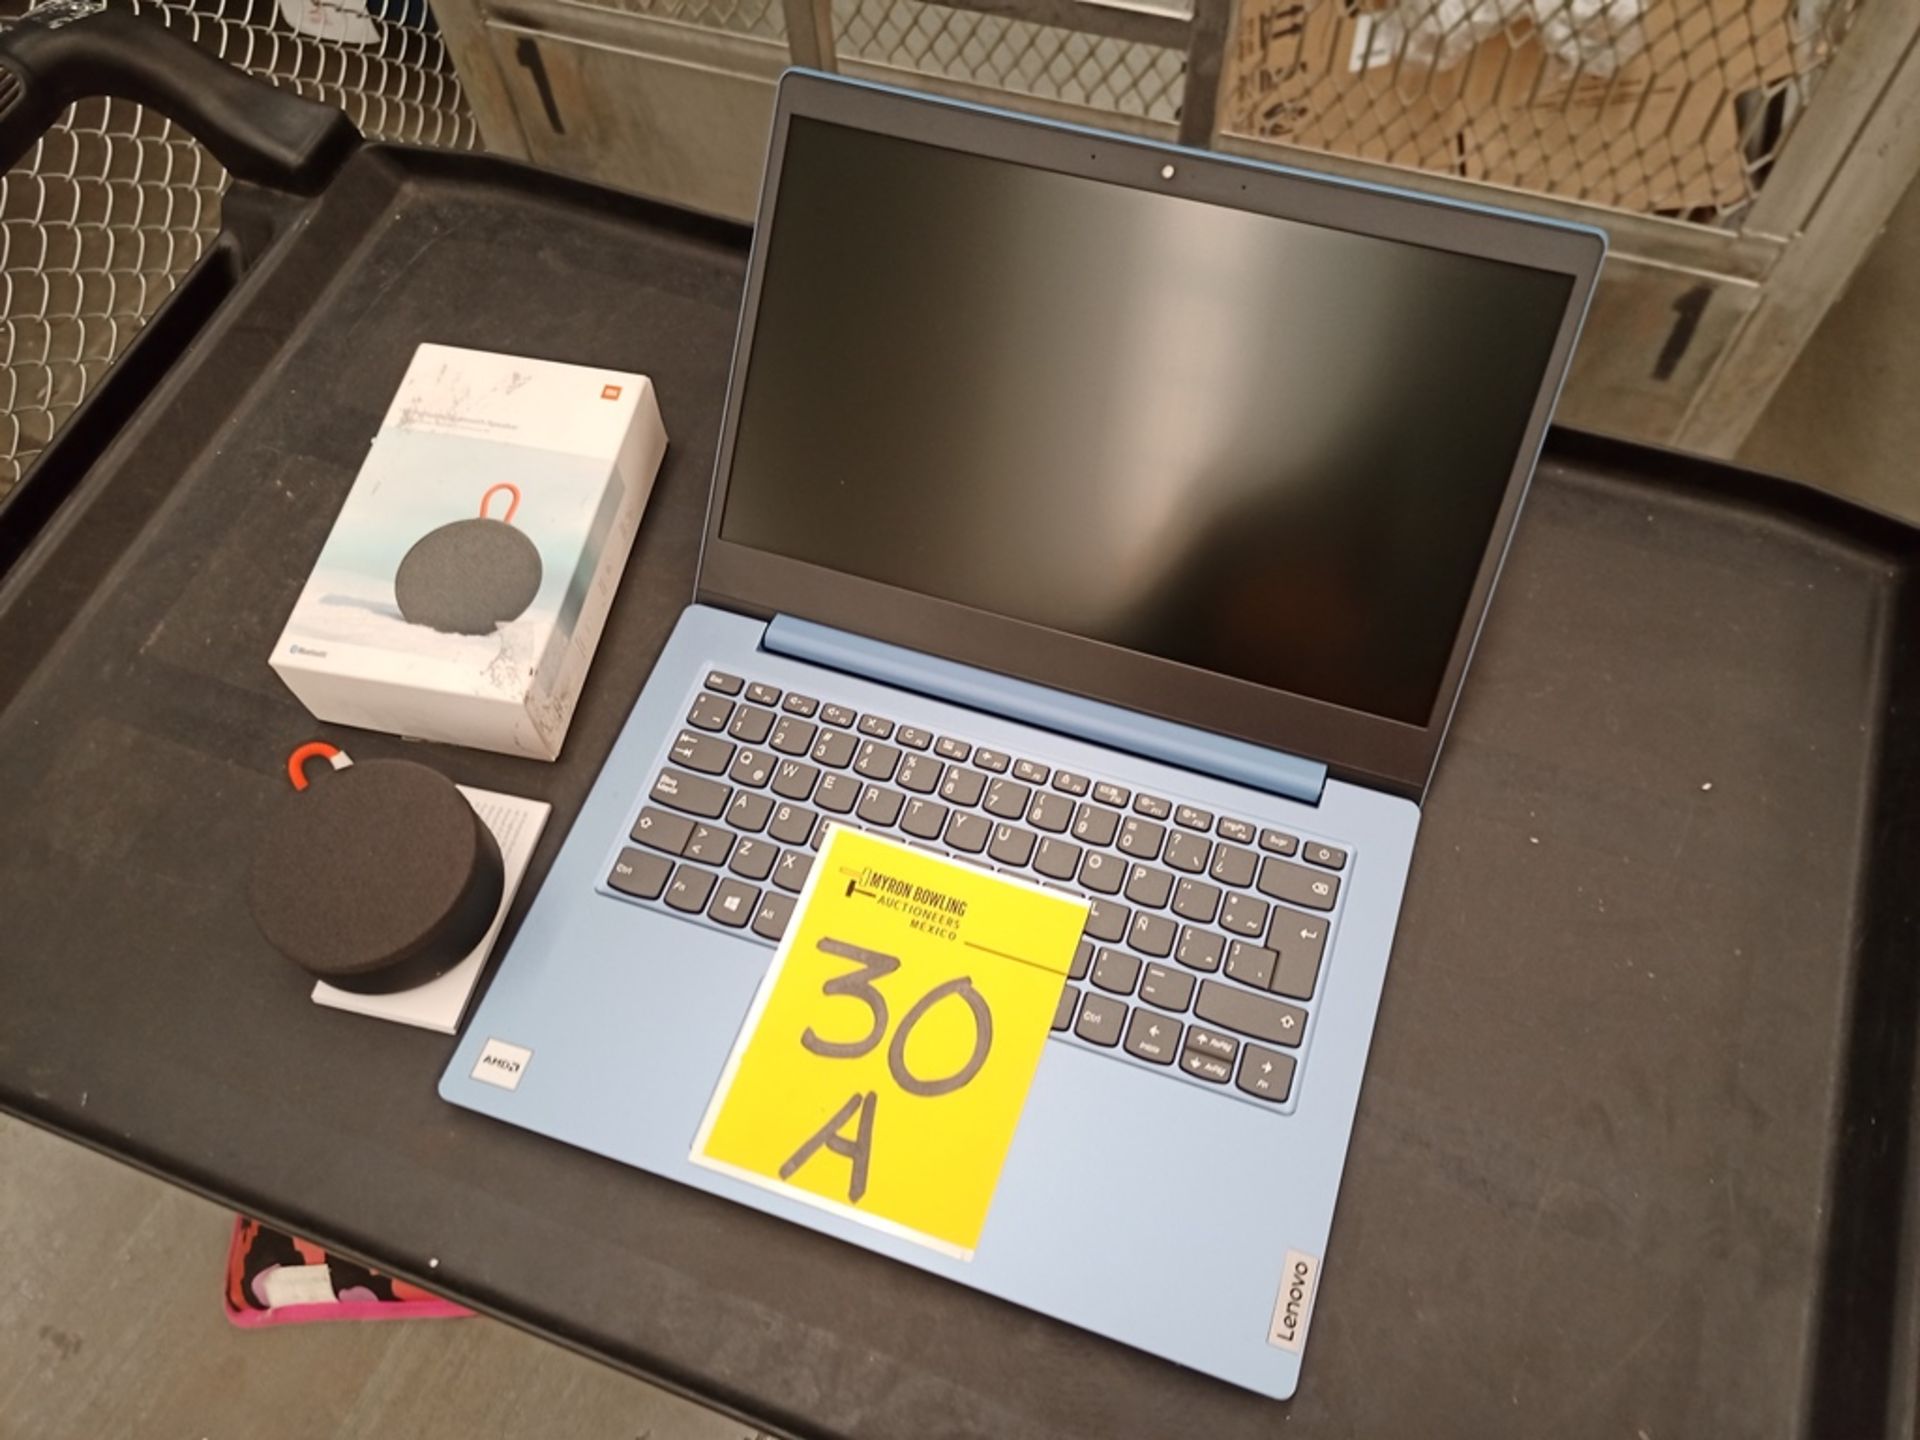 1 Computadora Tipo Lap Top Marca Lenovo Color azul, Procesador AMD 3020, Memoria RAM 4GB, HDD 64GB, - Image 6 of 13